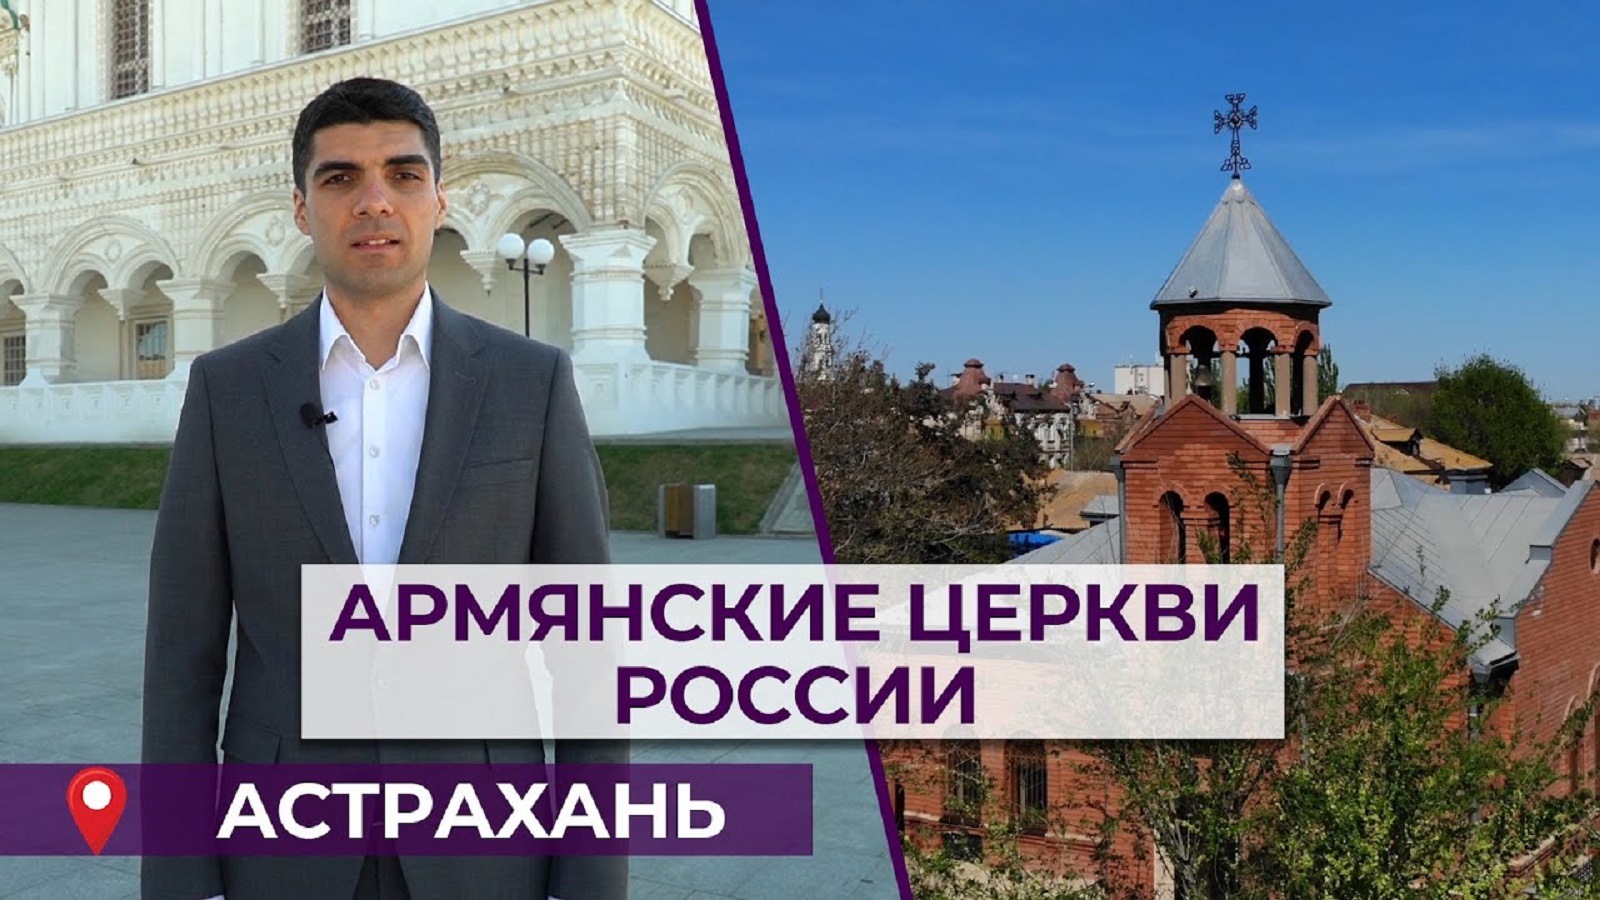 Армянские церкви России | Астрахань